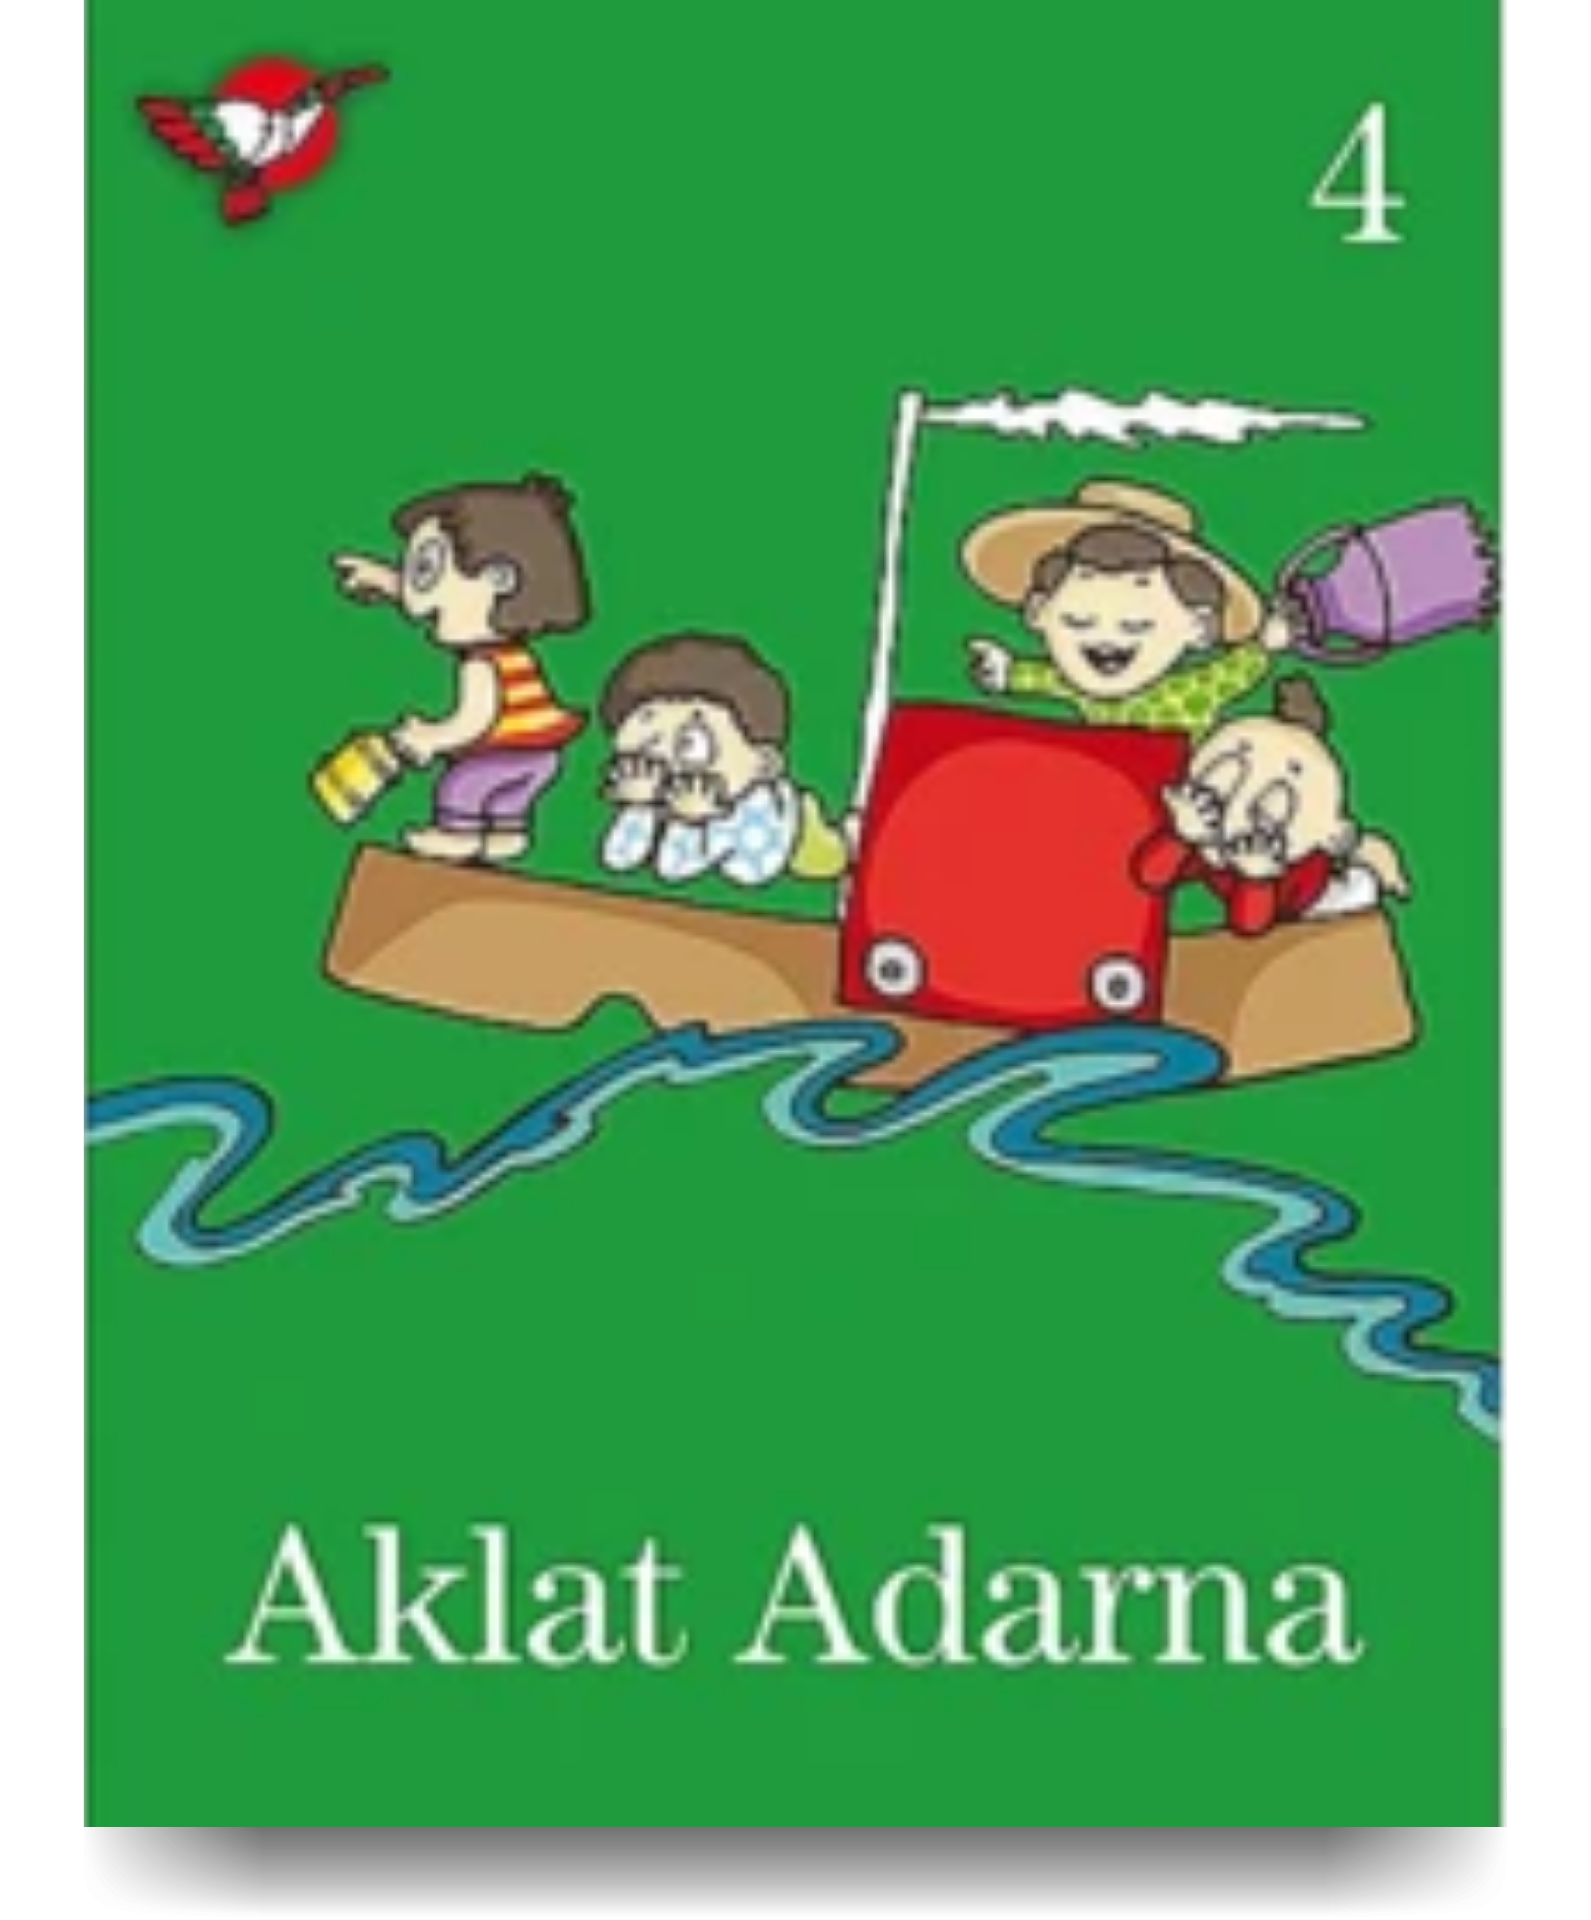 Aklat Adarna Volume 4